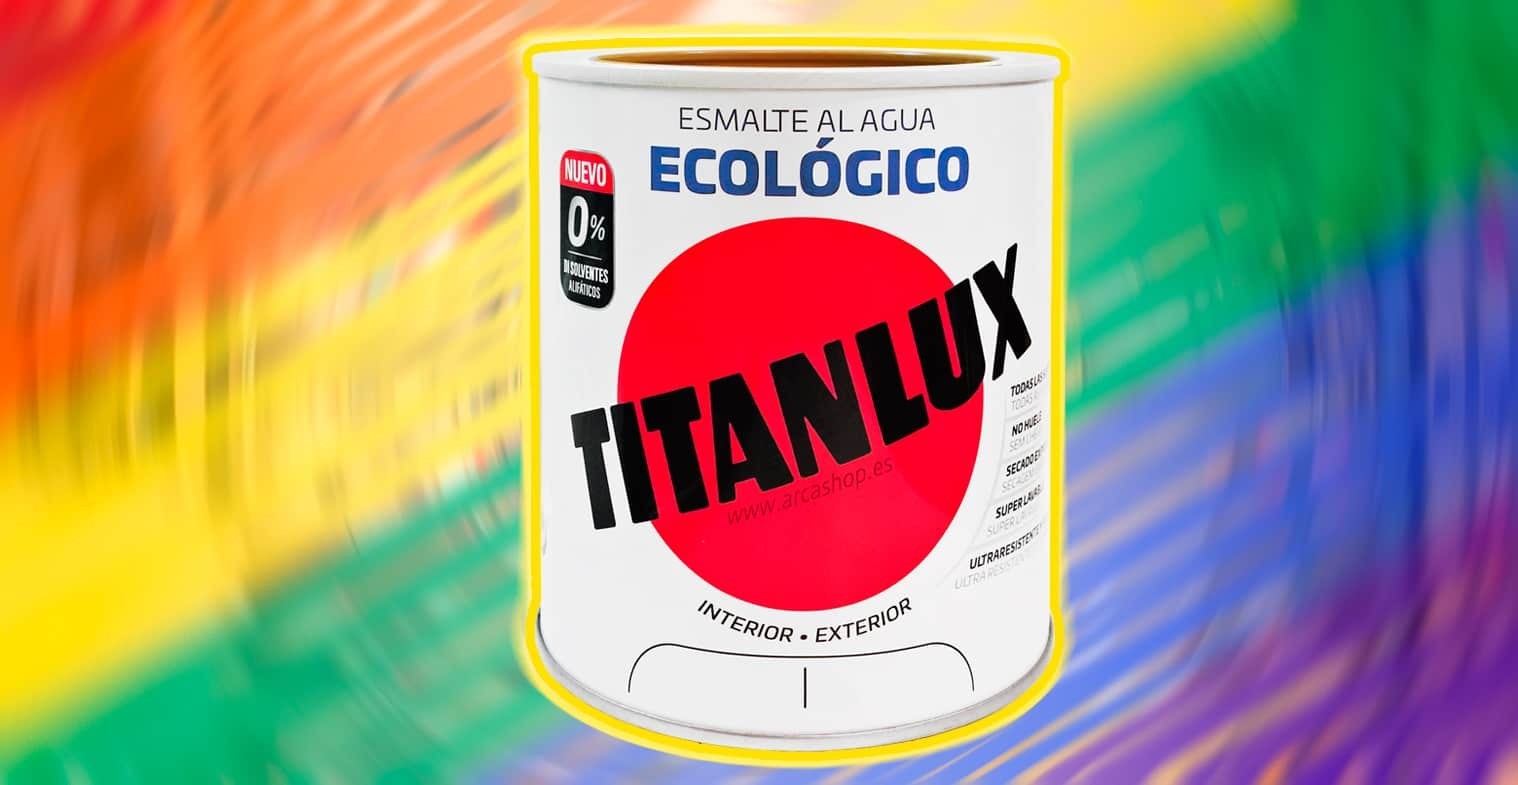 Descubre la Excelencia del Esmalte Ecológico de Titanlux en Arcashop.es